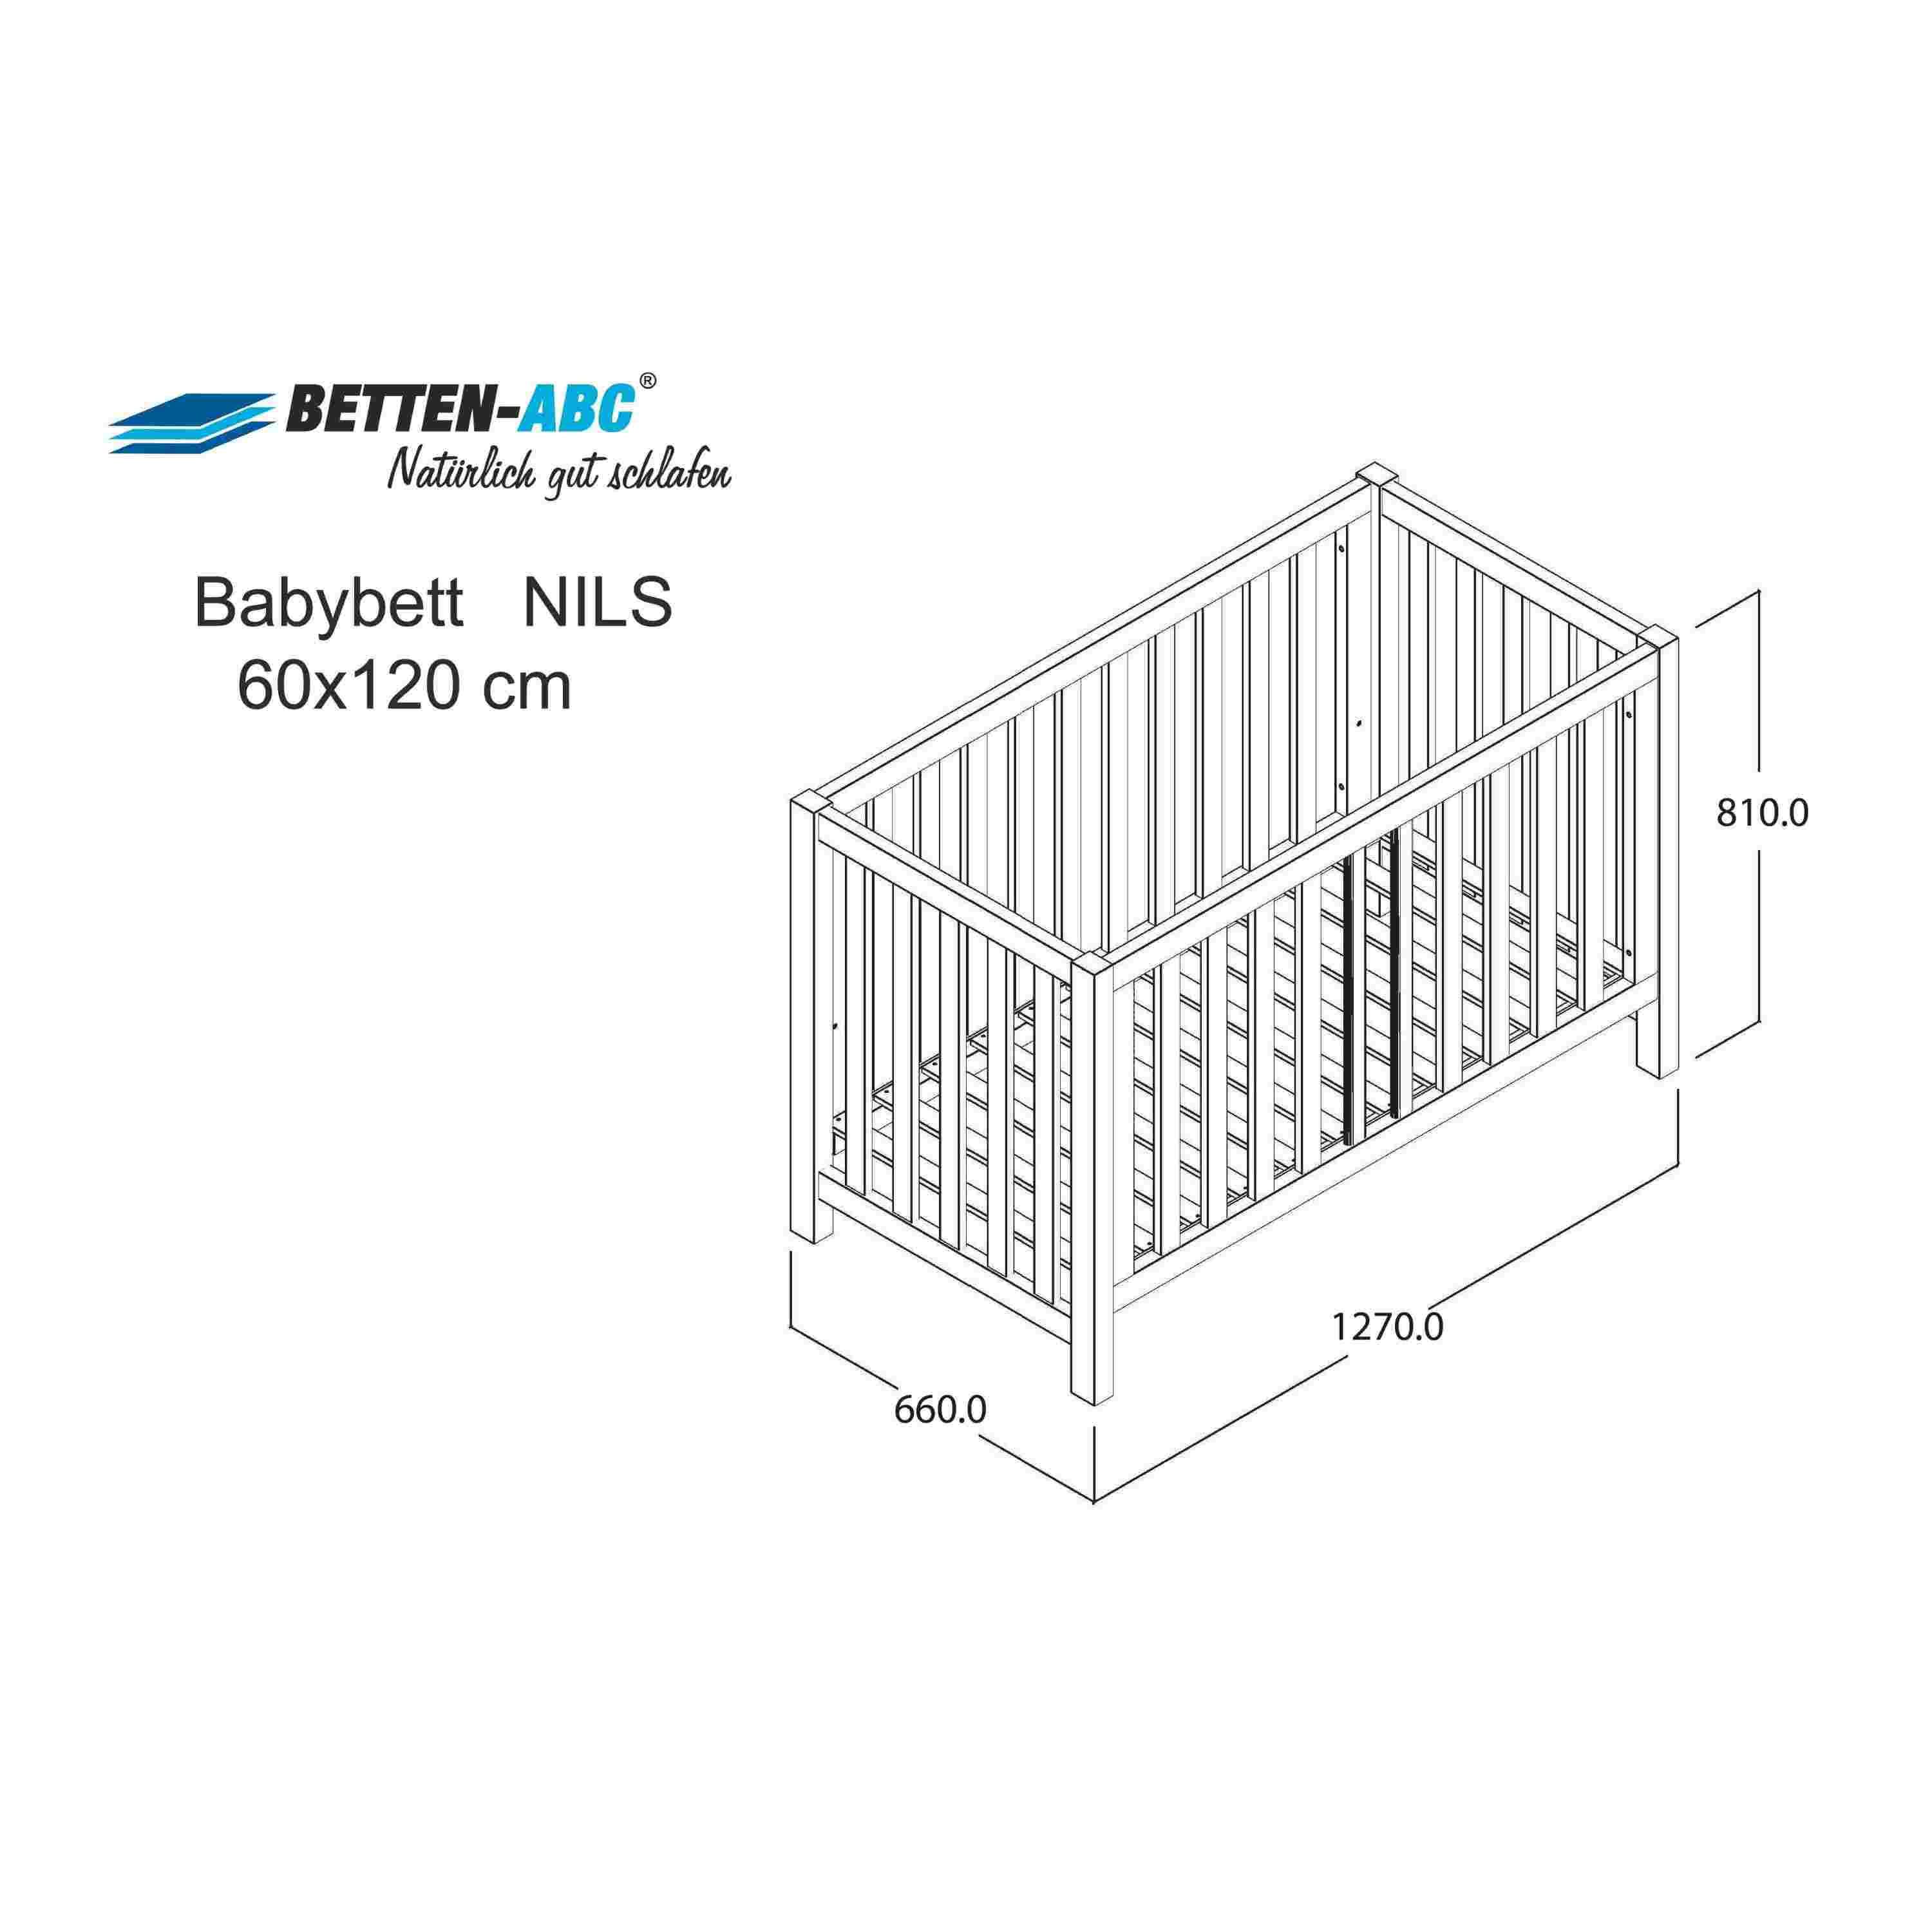 Komplettset Nils classic – Babybett mit Matratze, Decke und Kissen, weiß, 60x120 cm